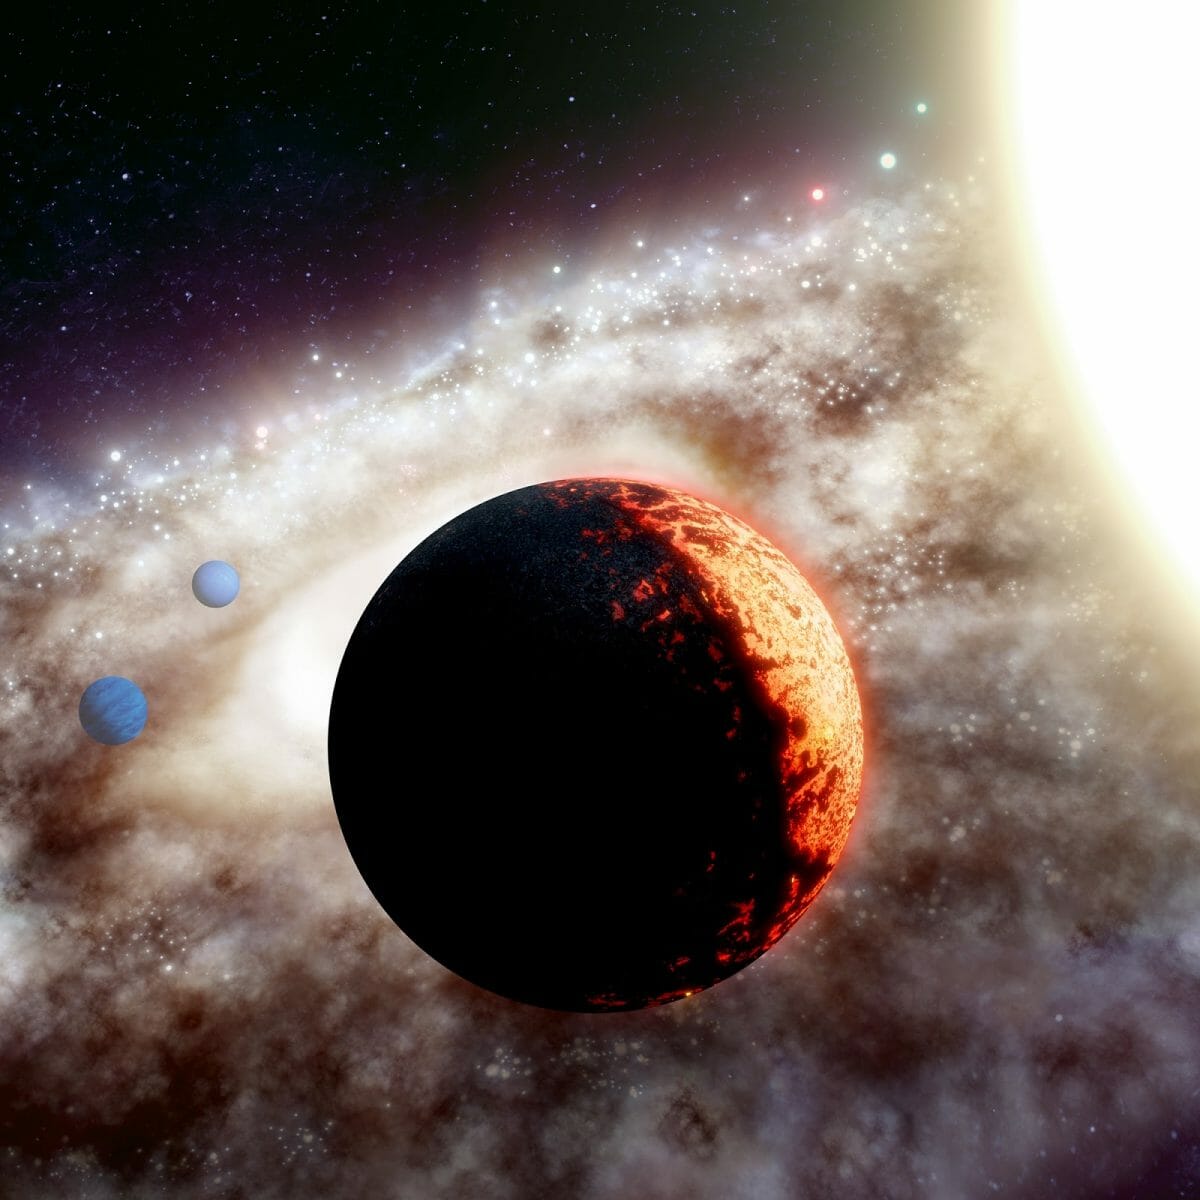 恒星TOI-561（右）と高温な岩石質の惑星TOI-561b（中央）、2つのガス惑星TOI-561cとTOI-561d（左）を描いた想像図（Credit: W. M. Keck Observatory/Adam Makarenko）